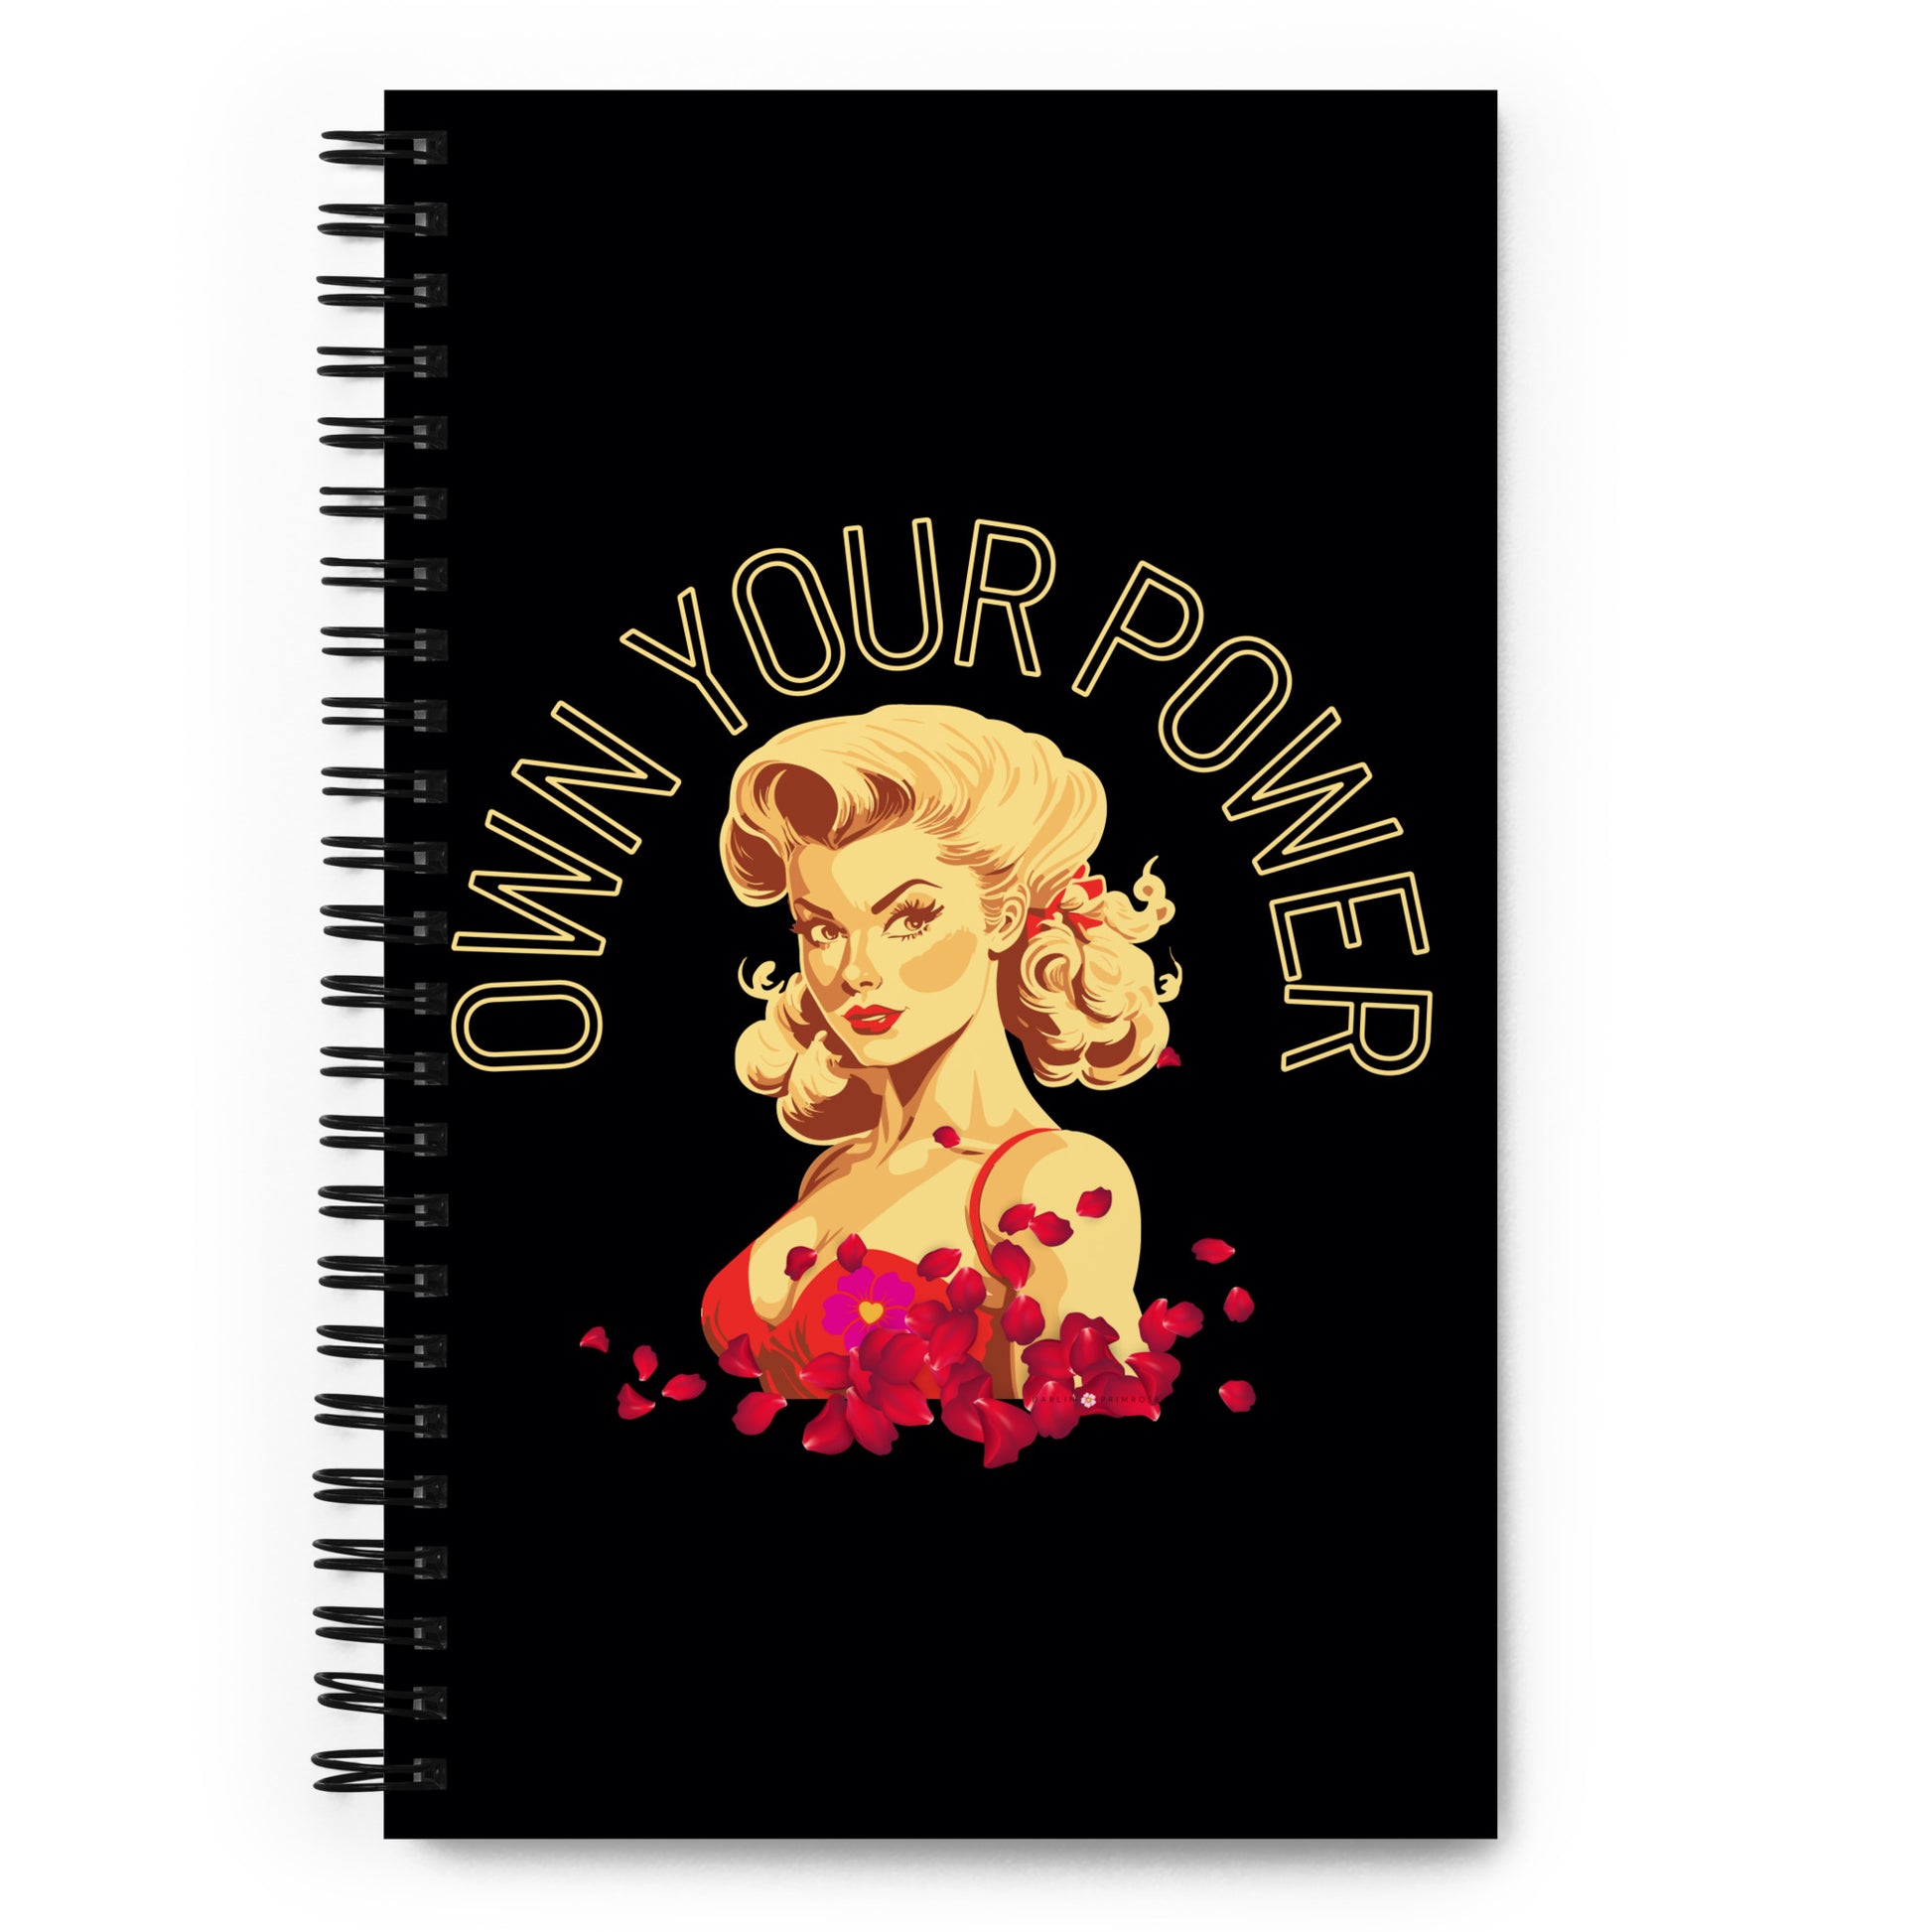 Own Your Power-Spiral notebook - Darlin Primrose